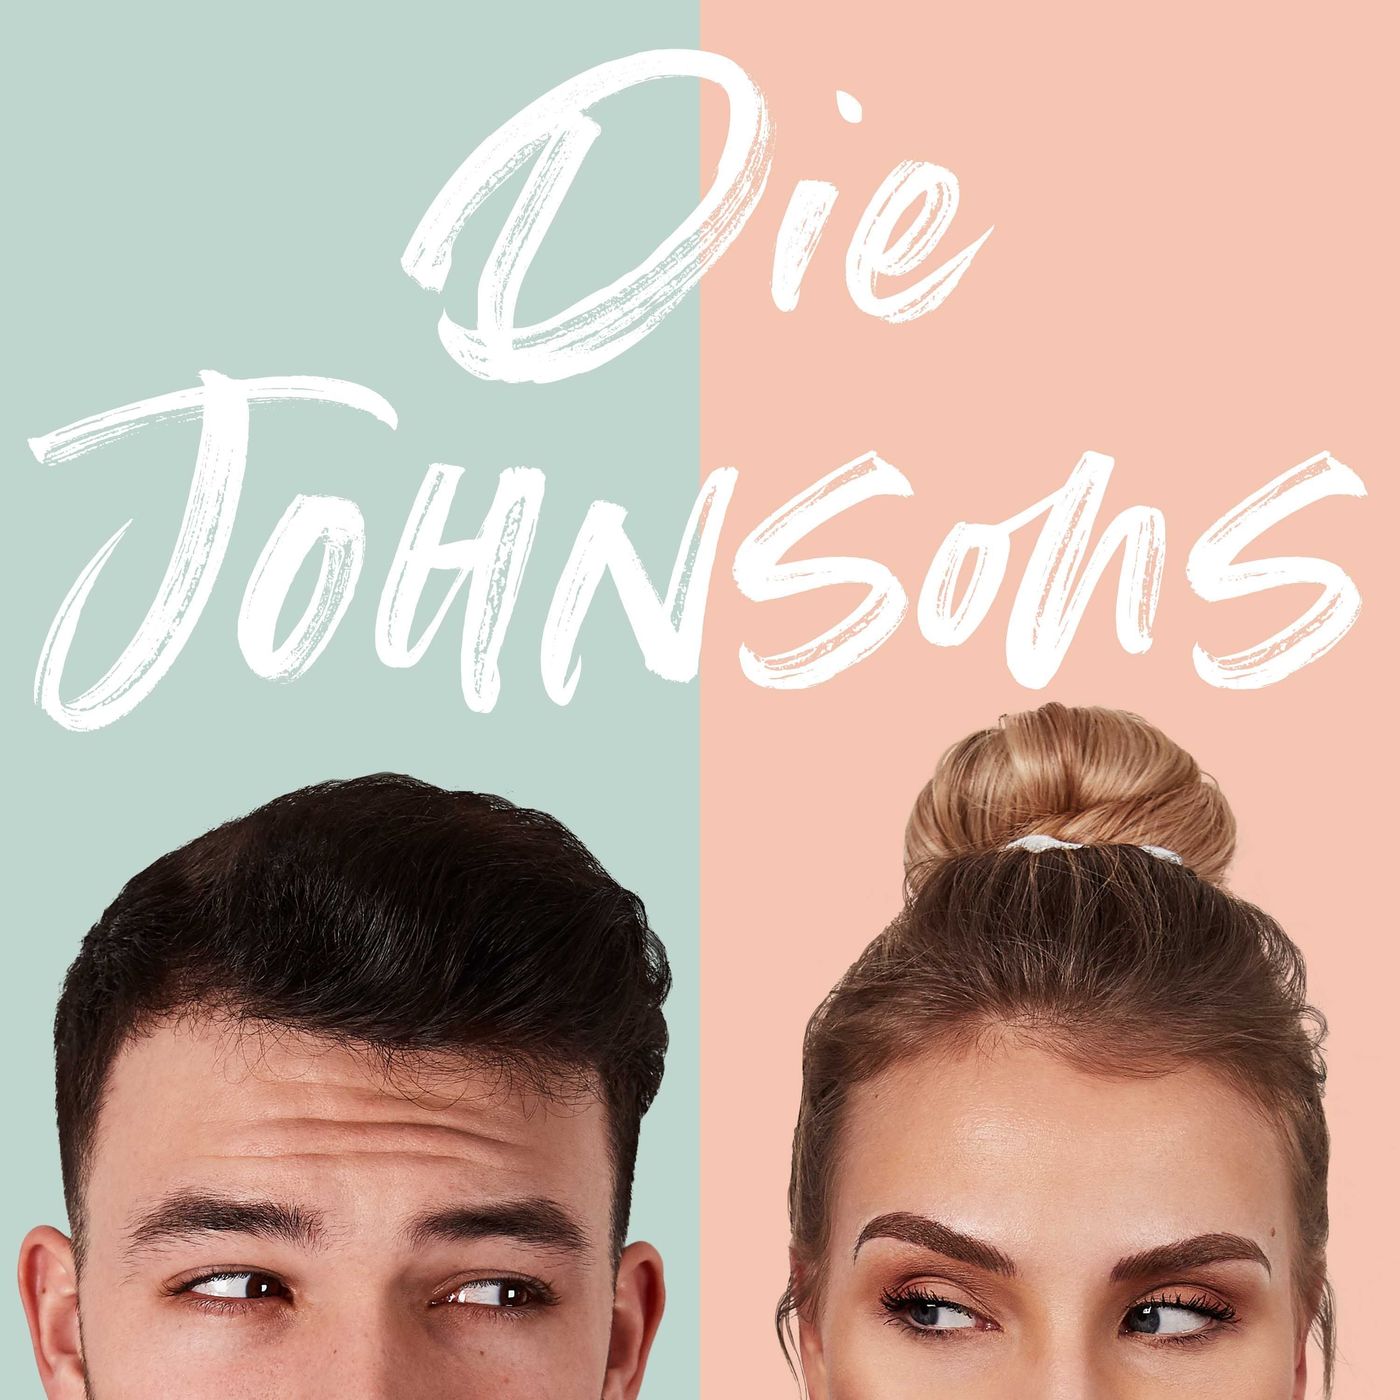 Alte Liebesbriefe und Ana's geheimes Kindertagebuch! | Die Johnsons Podcast Episode #6